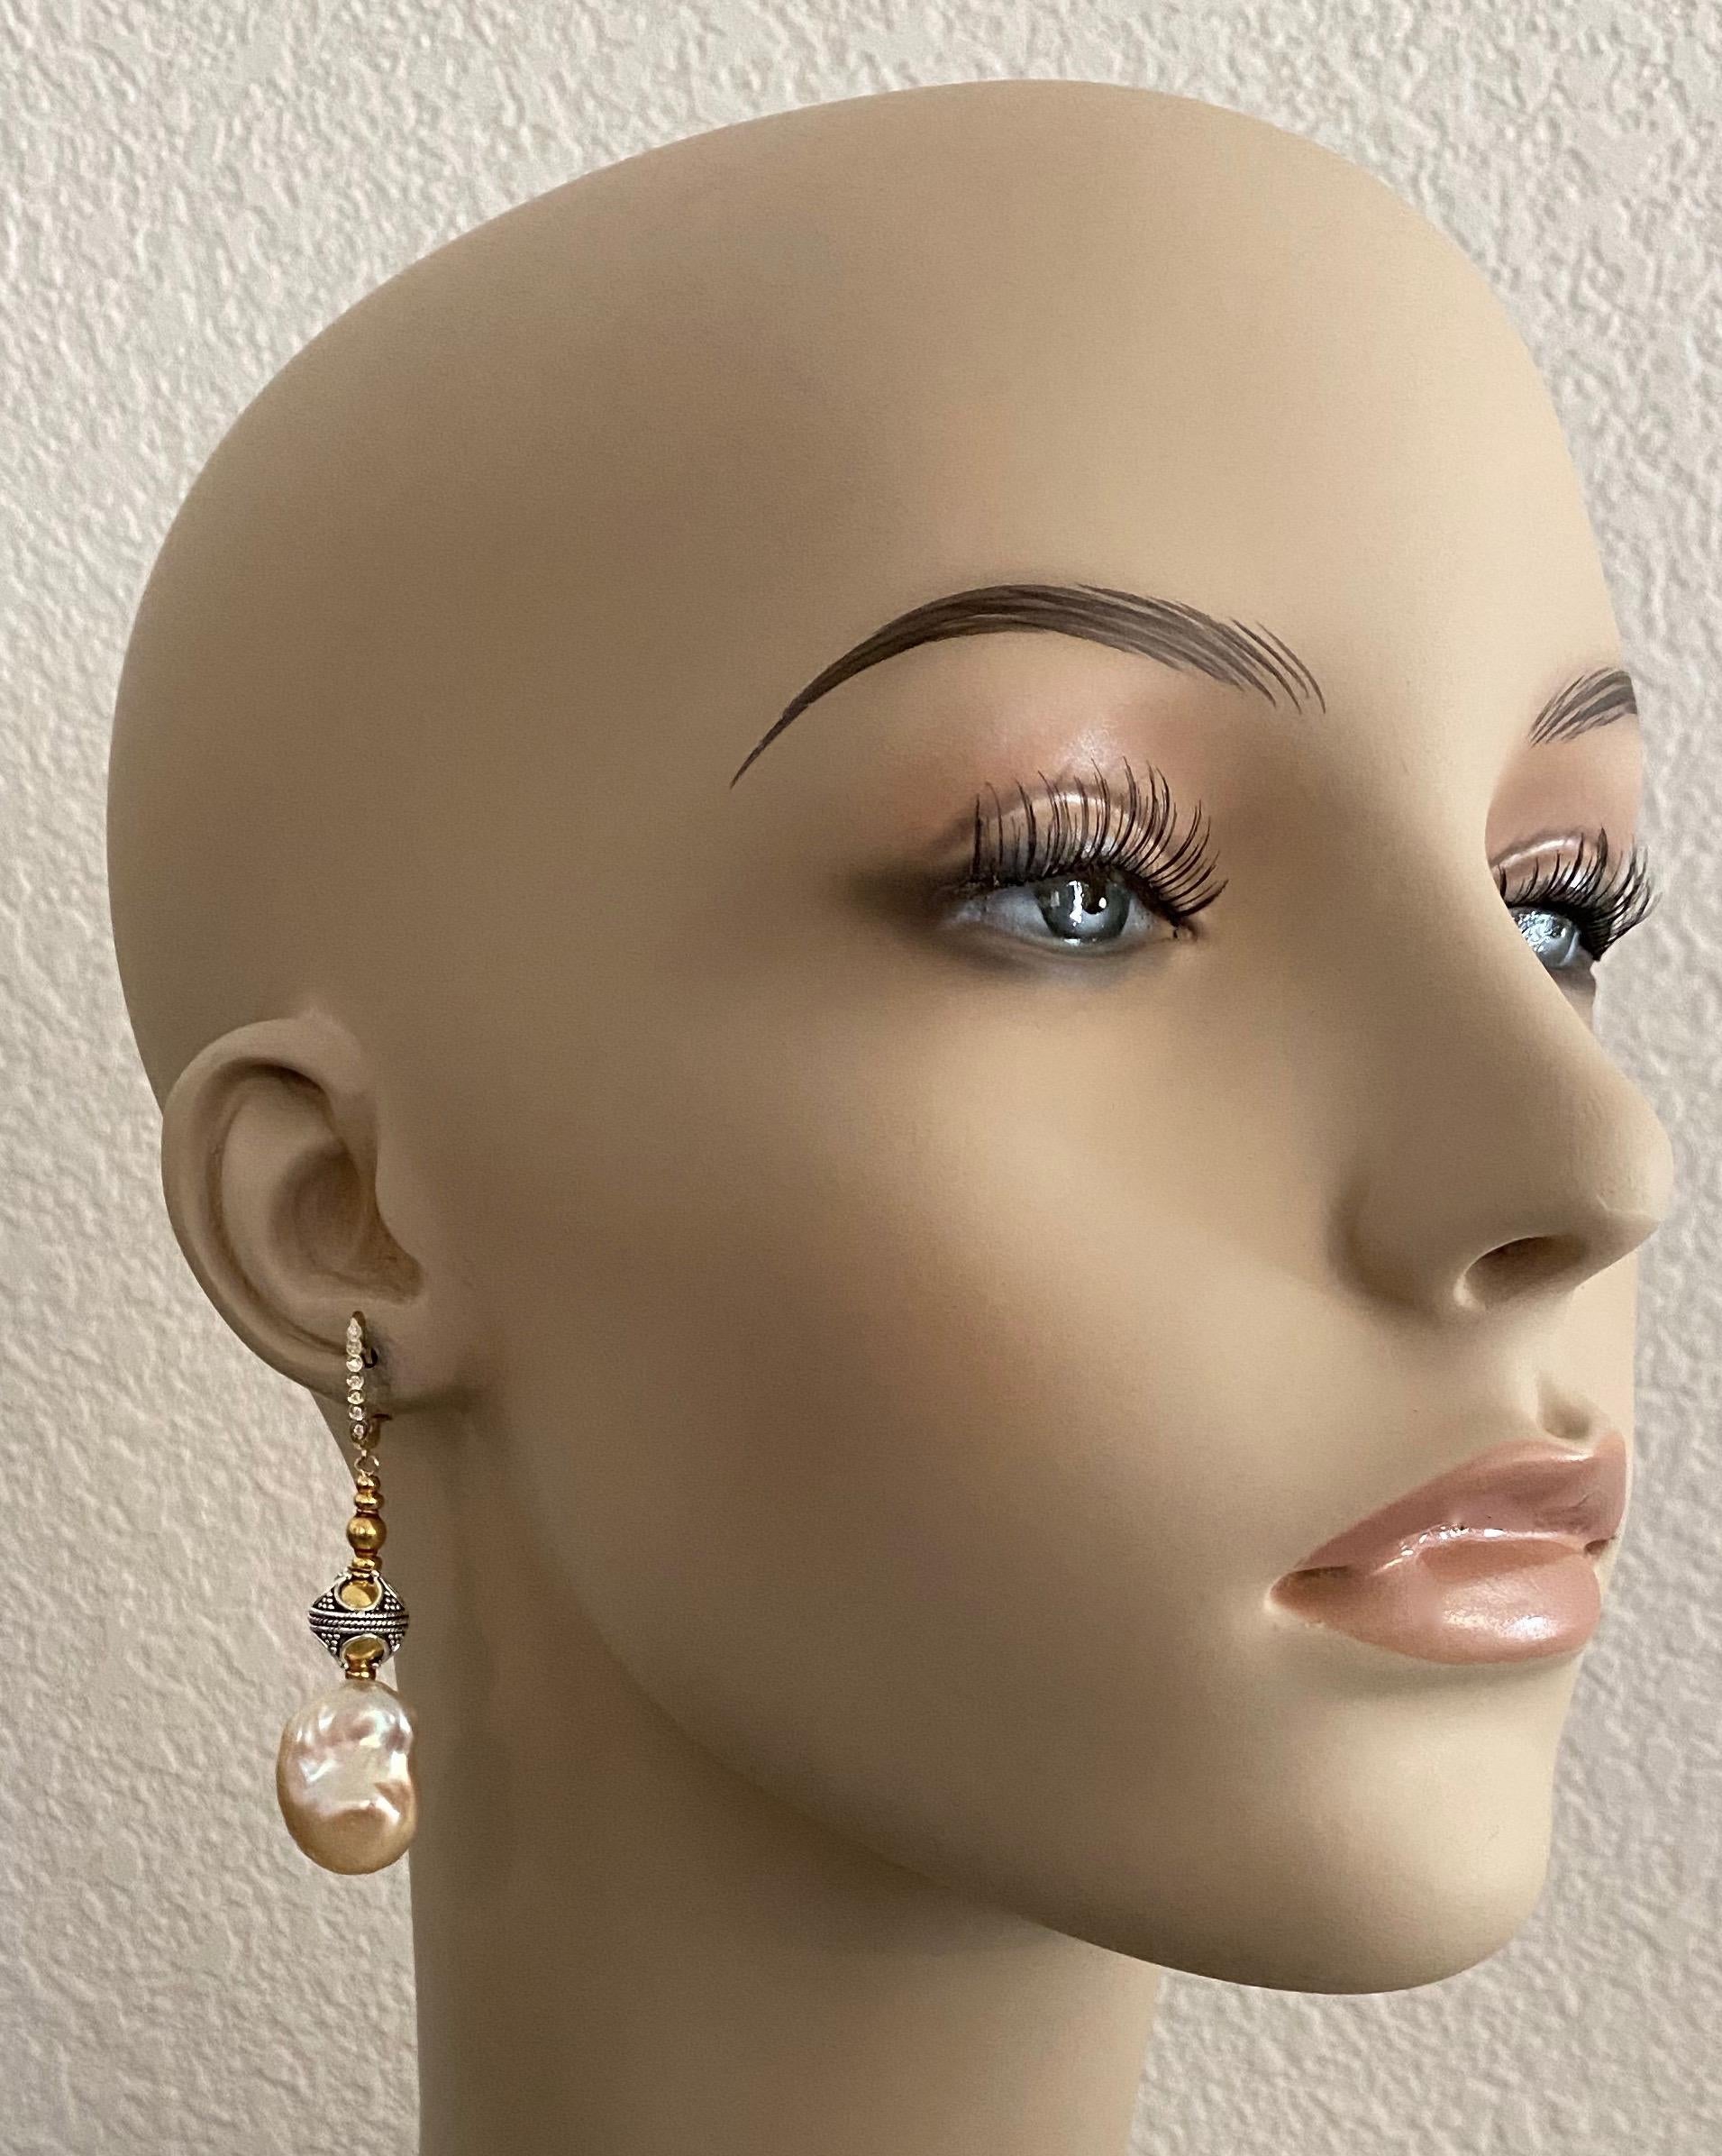 Pfirsichfarbene barocke Süßwasserperlen (Herkunft: China) sind in diesen eleganten Ohrhängern zu sehen.  Die Perlen messen 21mm x 13mm, sind makellos und haben einen wunderbaren Glanz.  Die Ohrringe sind außerdem mit 18-karätigem Gold und